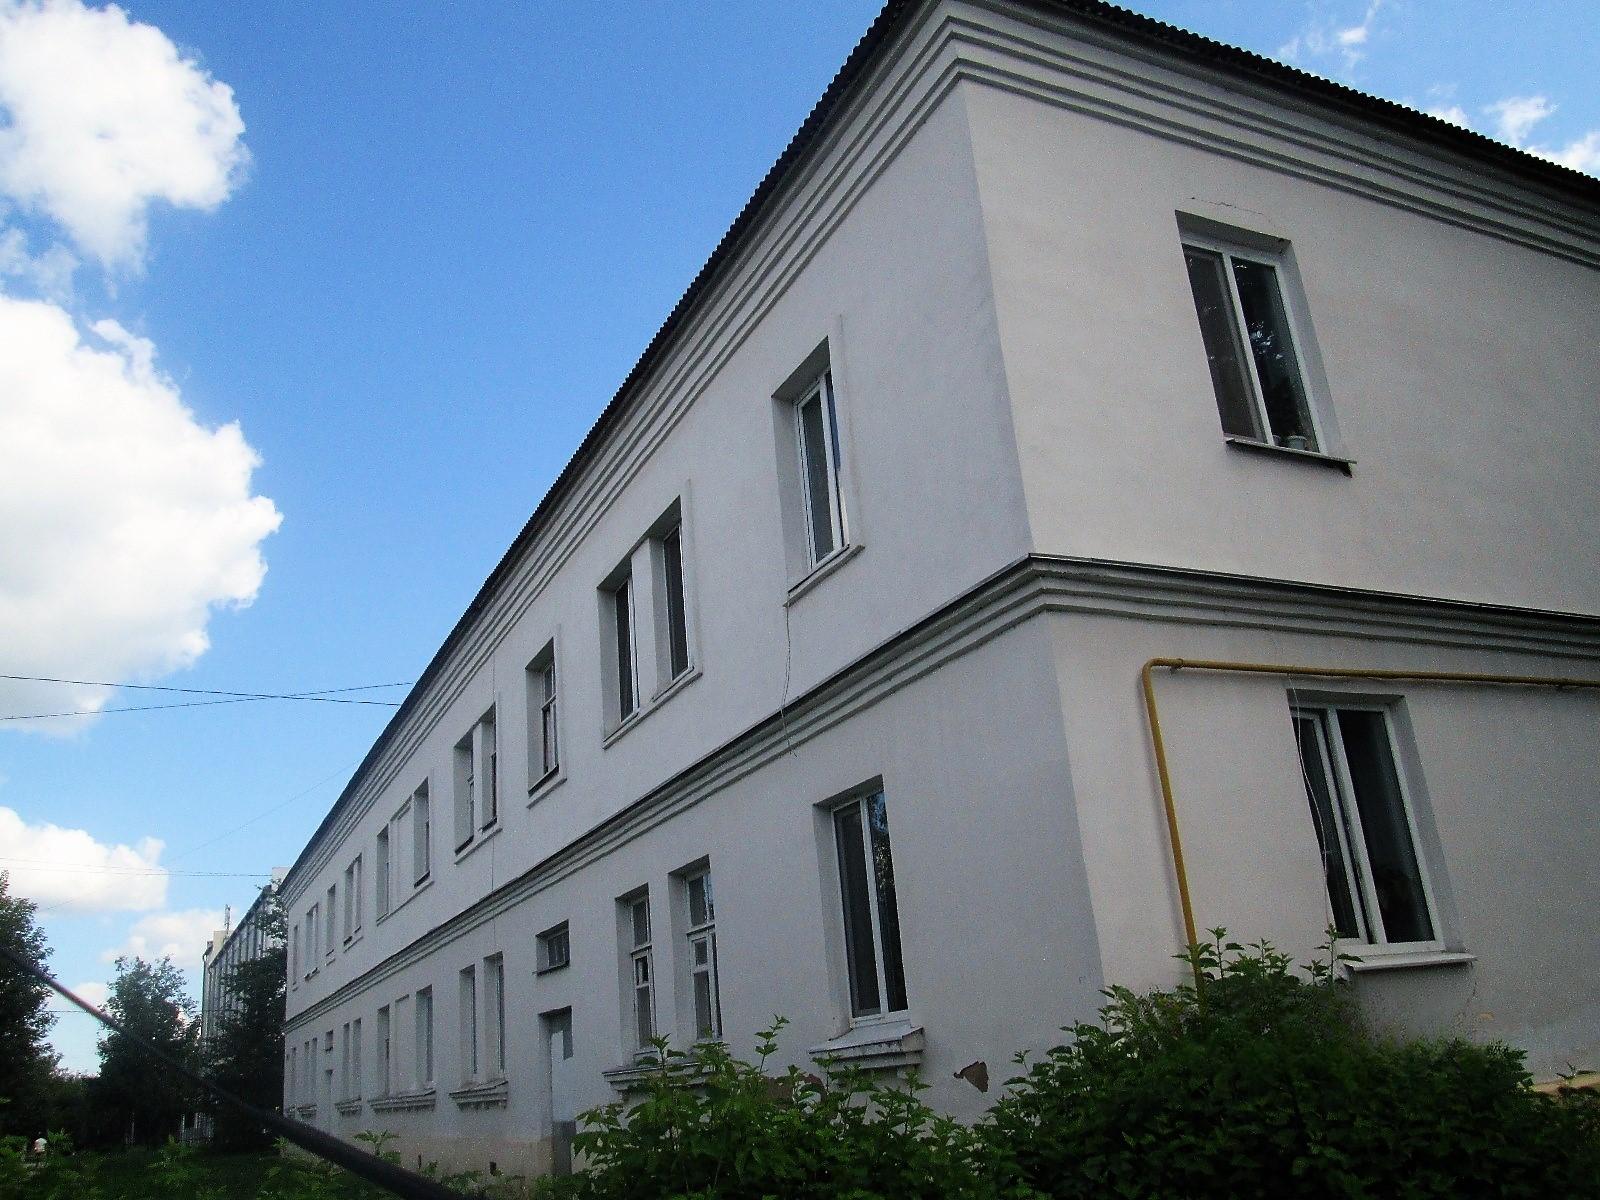 Хозяева квартир в двухэтажке на улице Кирова до 15 июня должны выбрать способ накопления на капремонт